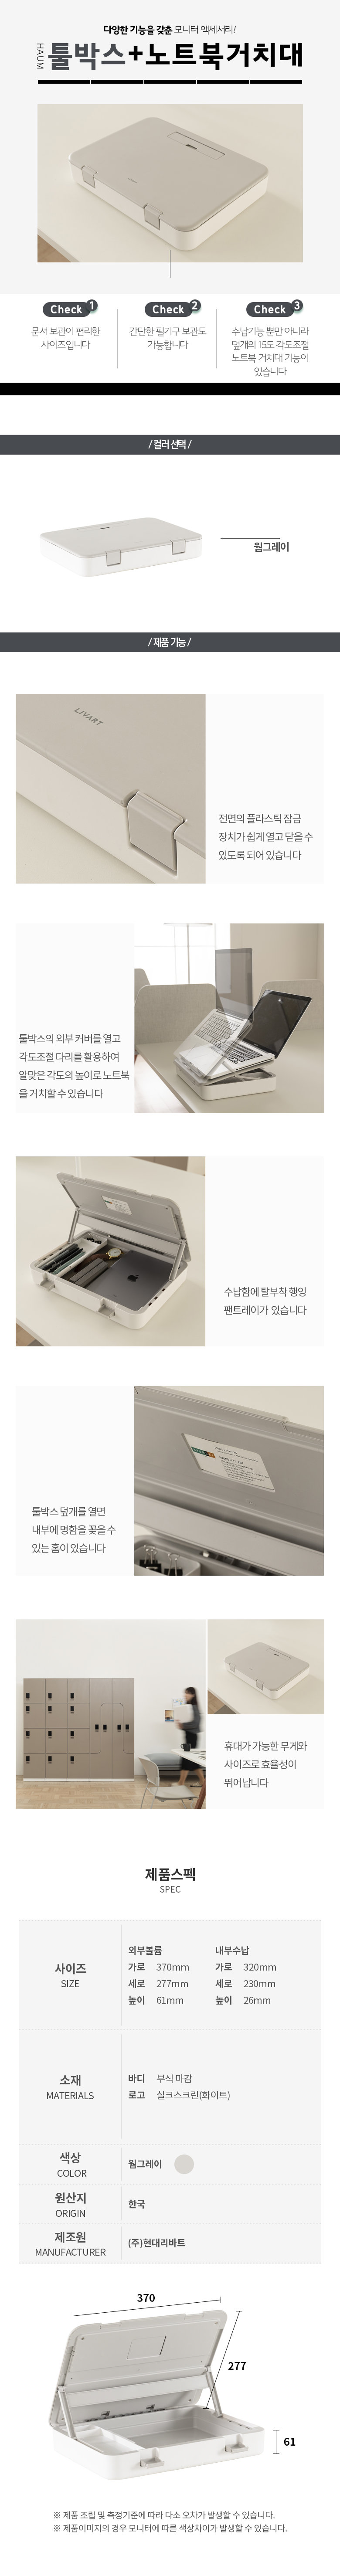 툴박스+노트북거치대.png